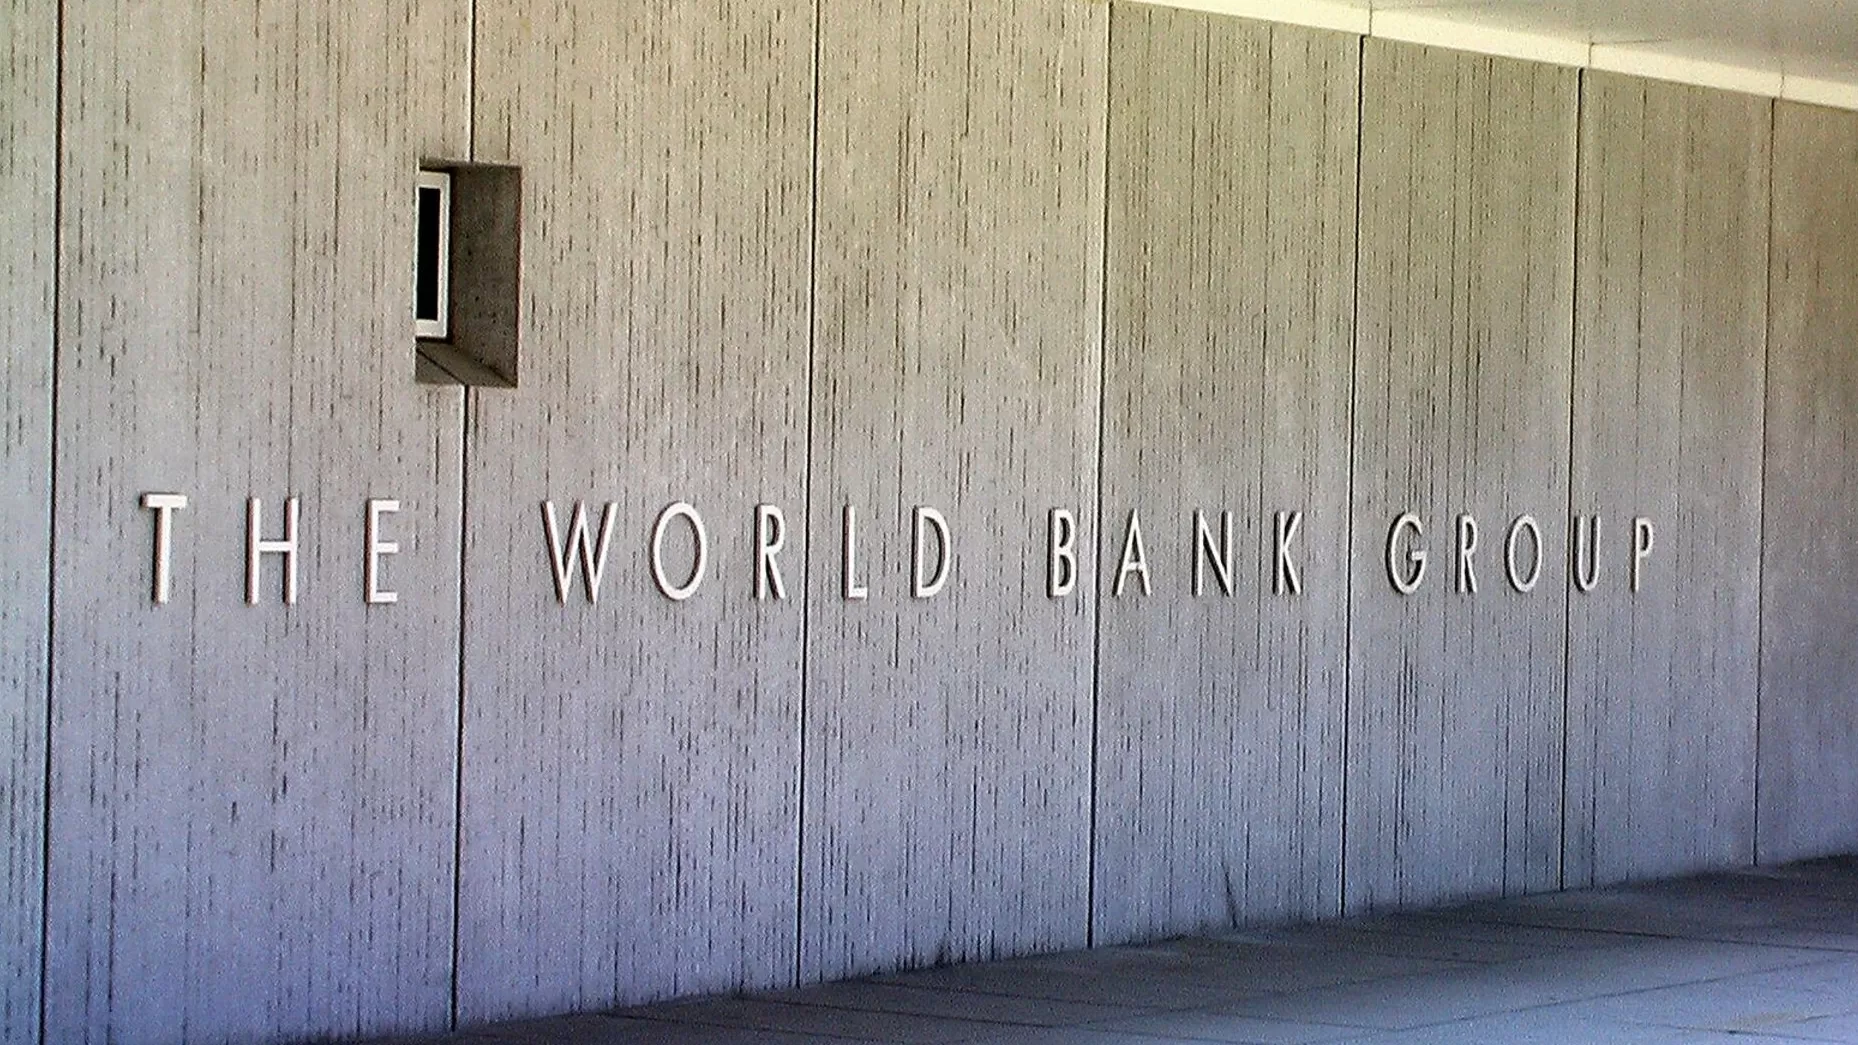 Համաշխարհային բանկը զգուշացնում է աշխարհին հնարավոր լուրջ վնասների մասին